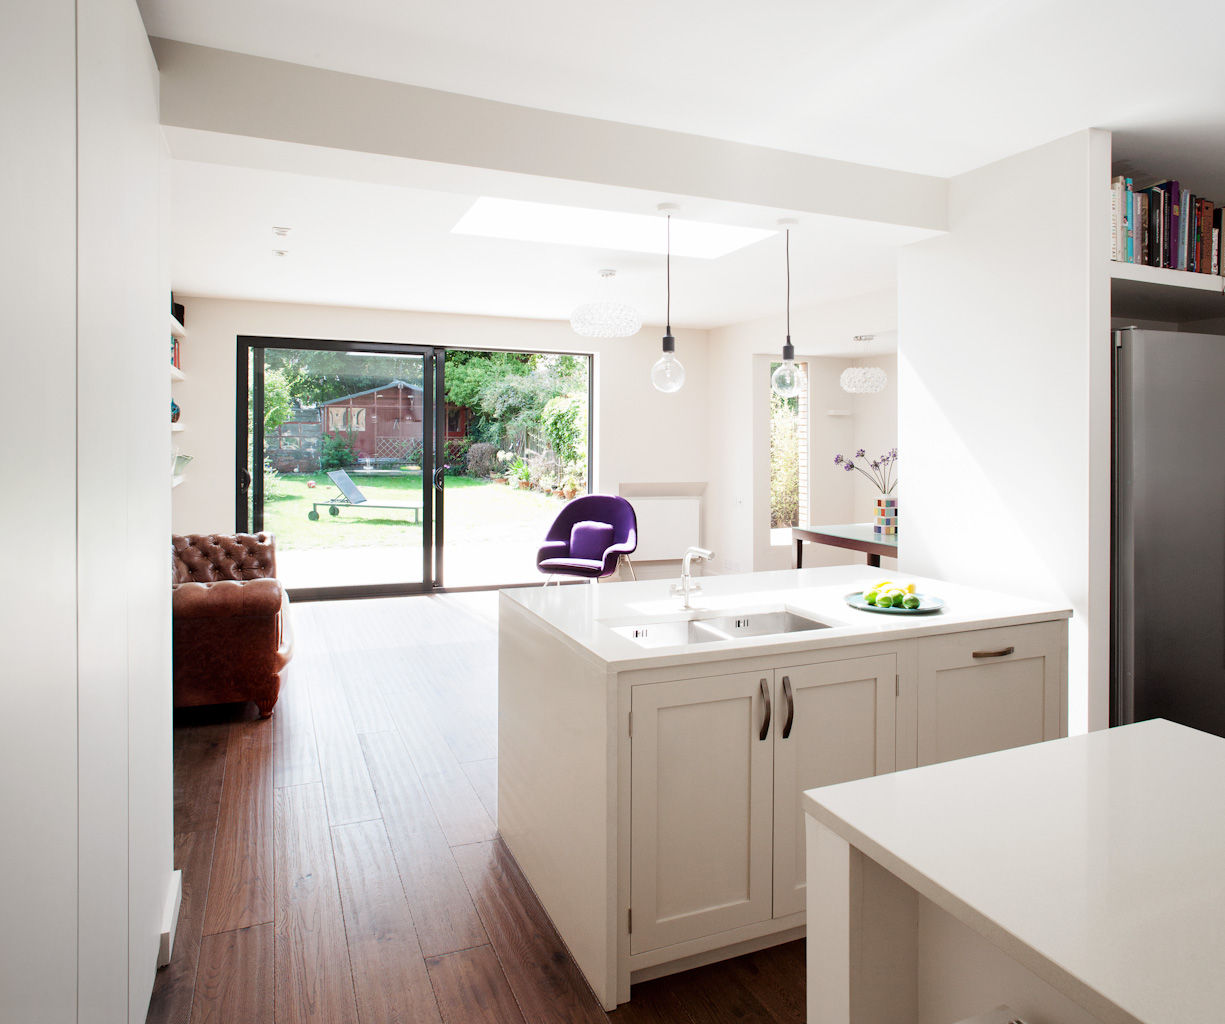 The Kitchen and the Living Room Francesco Pierazzi Architects Cocinas modernas: Ideas, imágenes y decoración